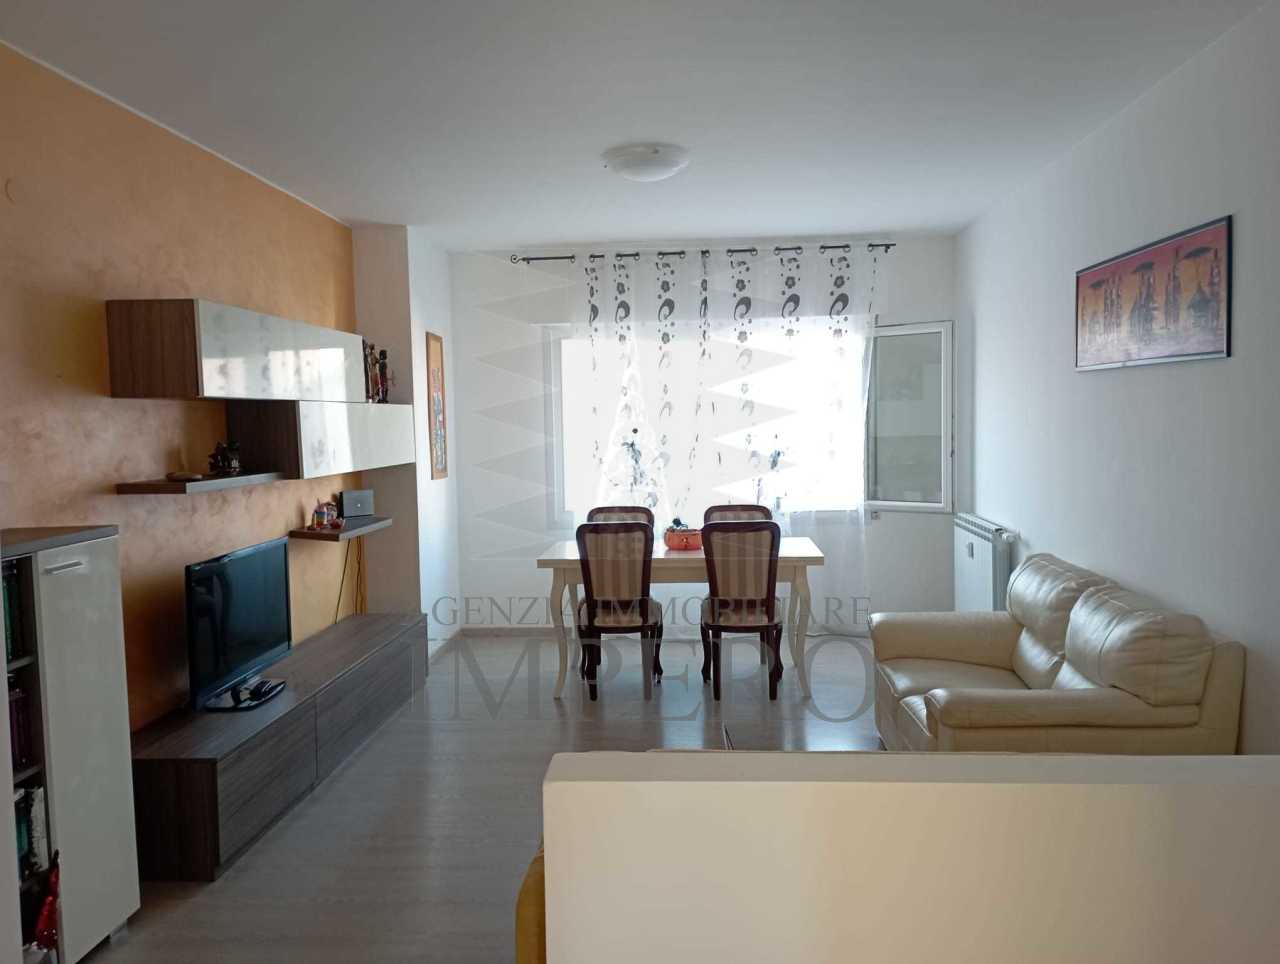 Appartamento in vendita a Vallecrosia, 4 locali, prezzo € 258.000 | PortaleAgenzieImmobiliari.it